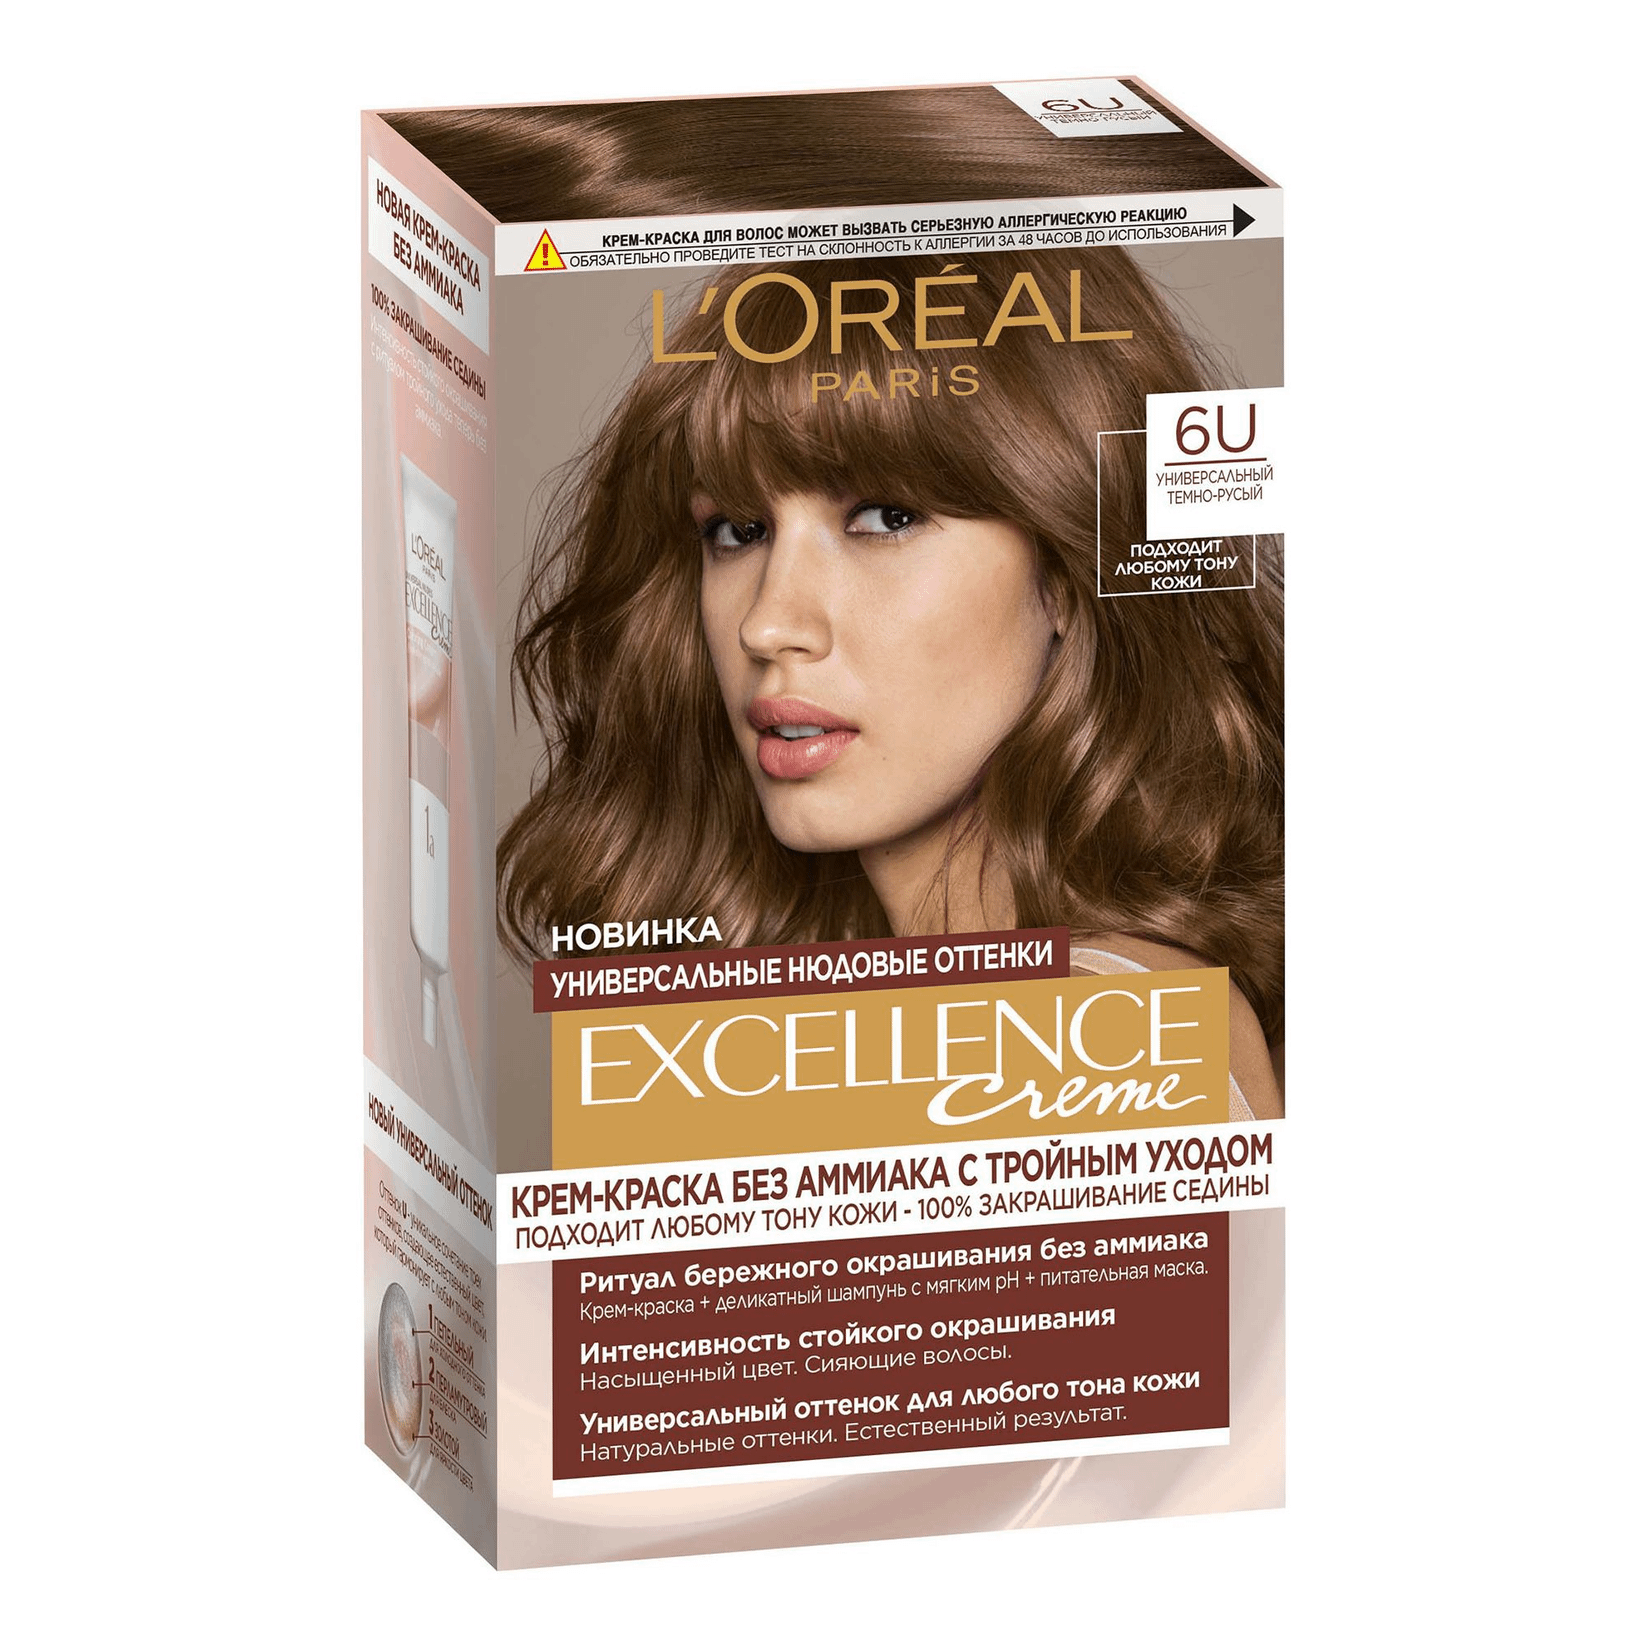 Крем-краска для волос L'Oreal Paris Excellence Creme оттенок 6U универсальный темно-русый